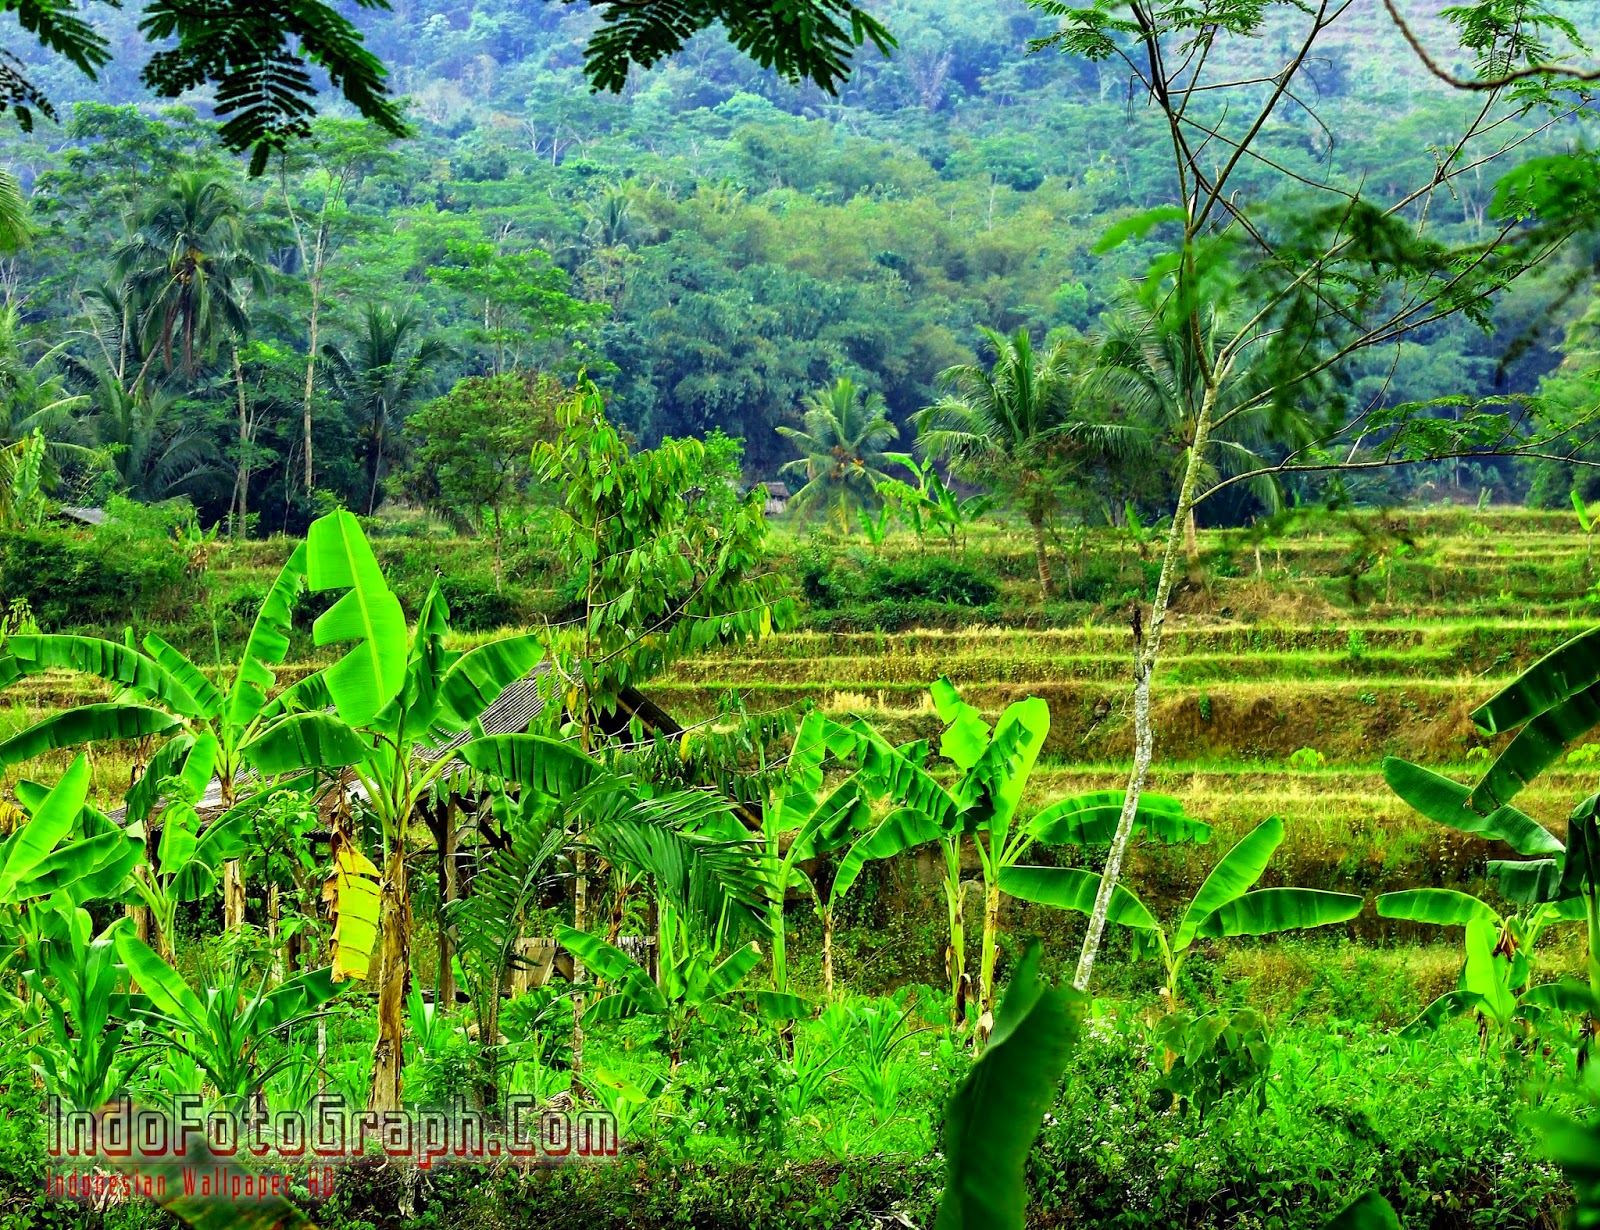 Download Wallpaper Pemandangan Alam Indonesia IndoFotographCom